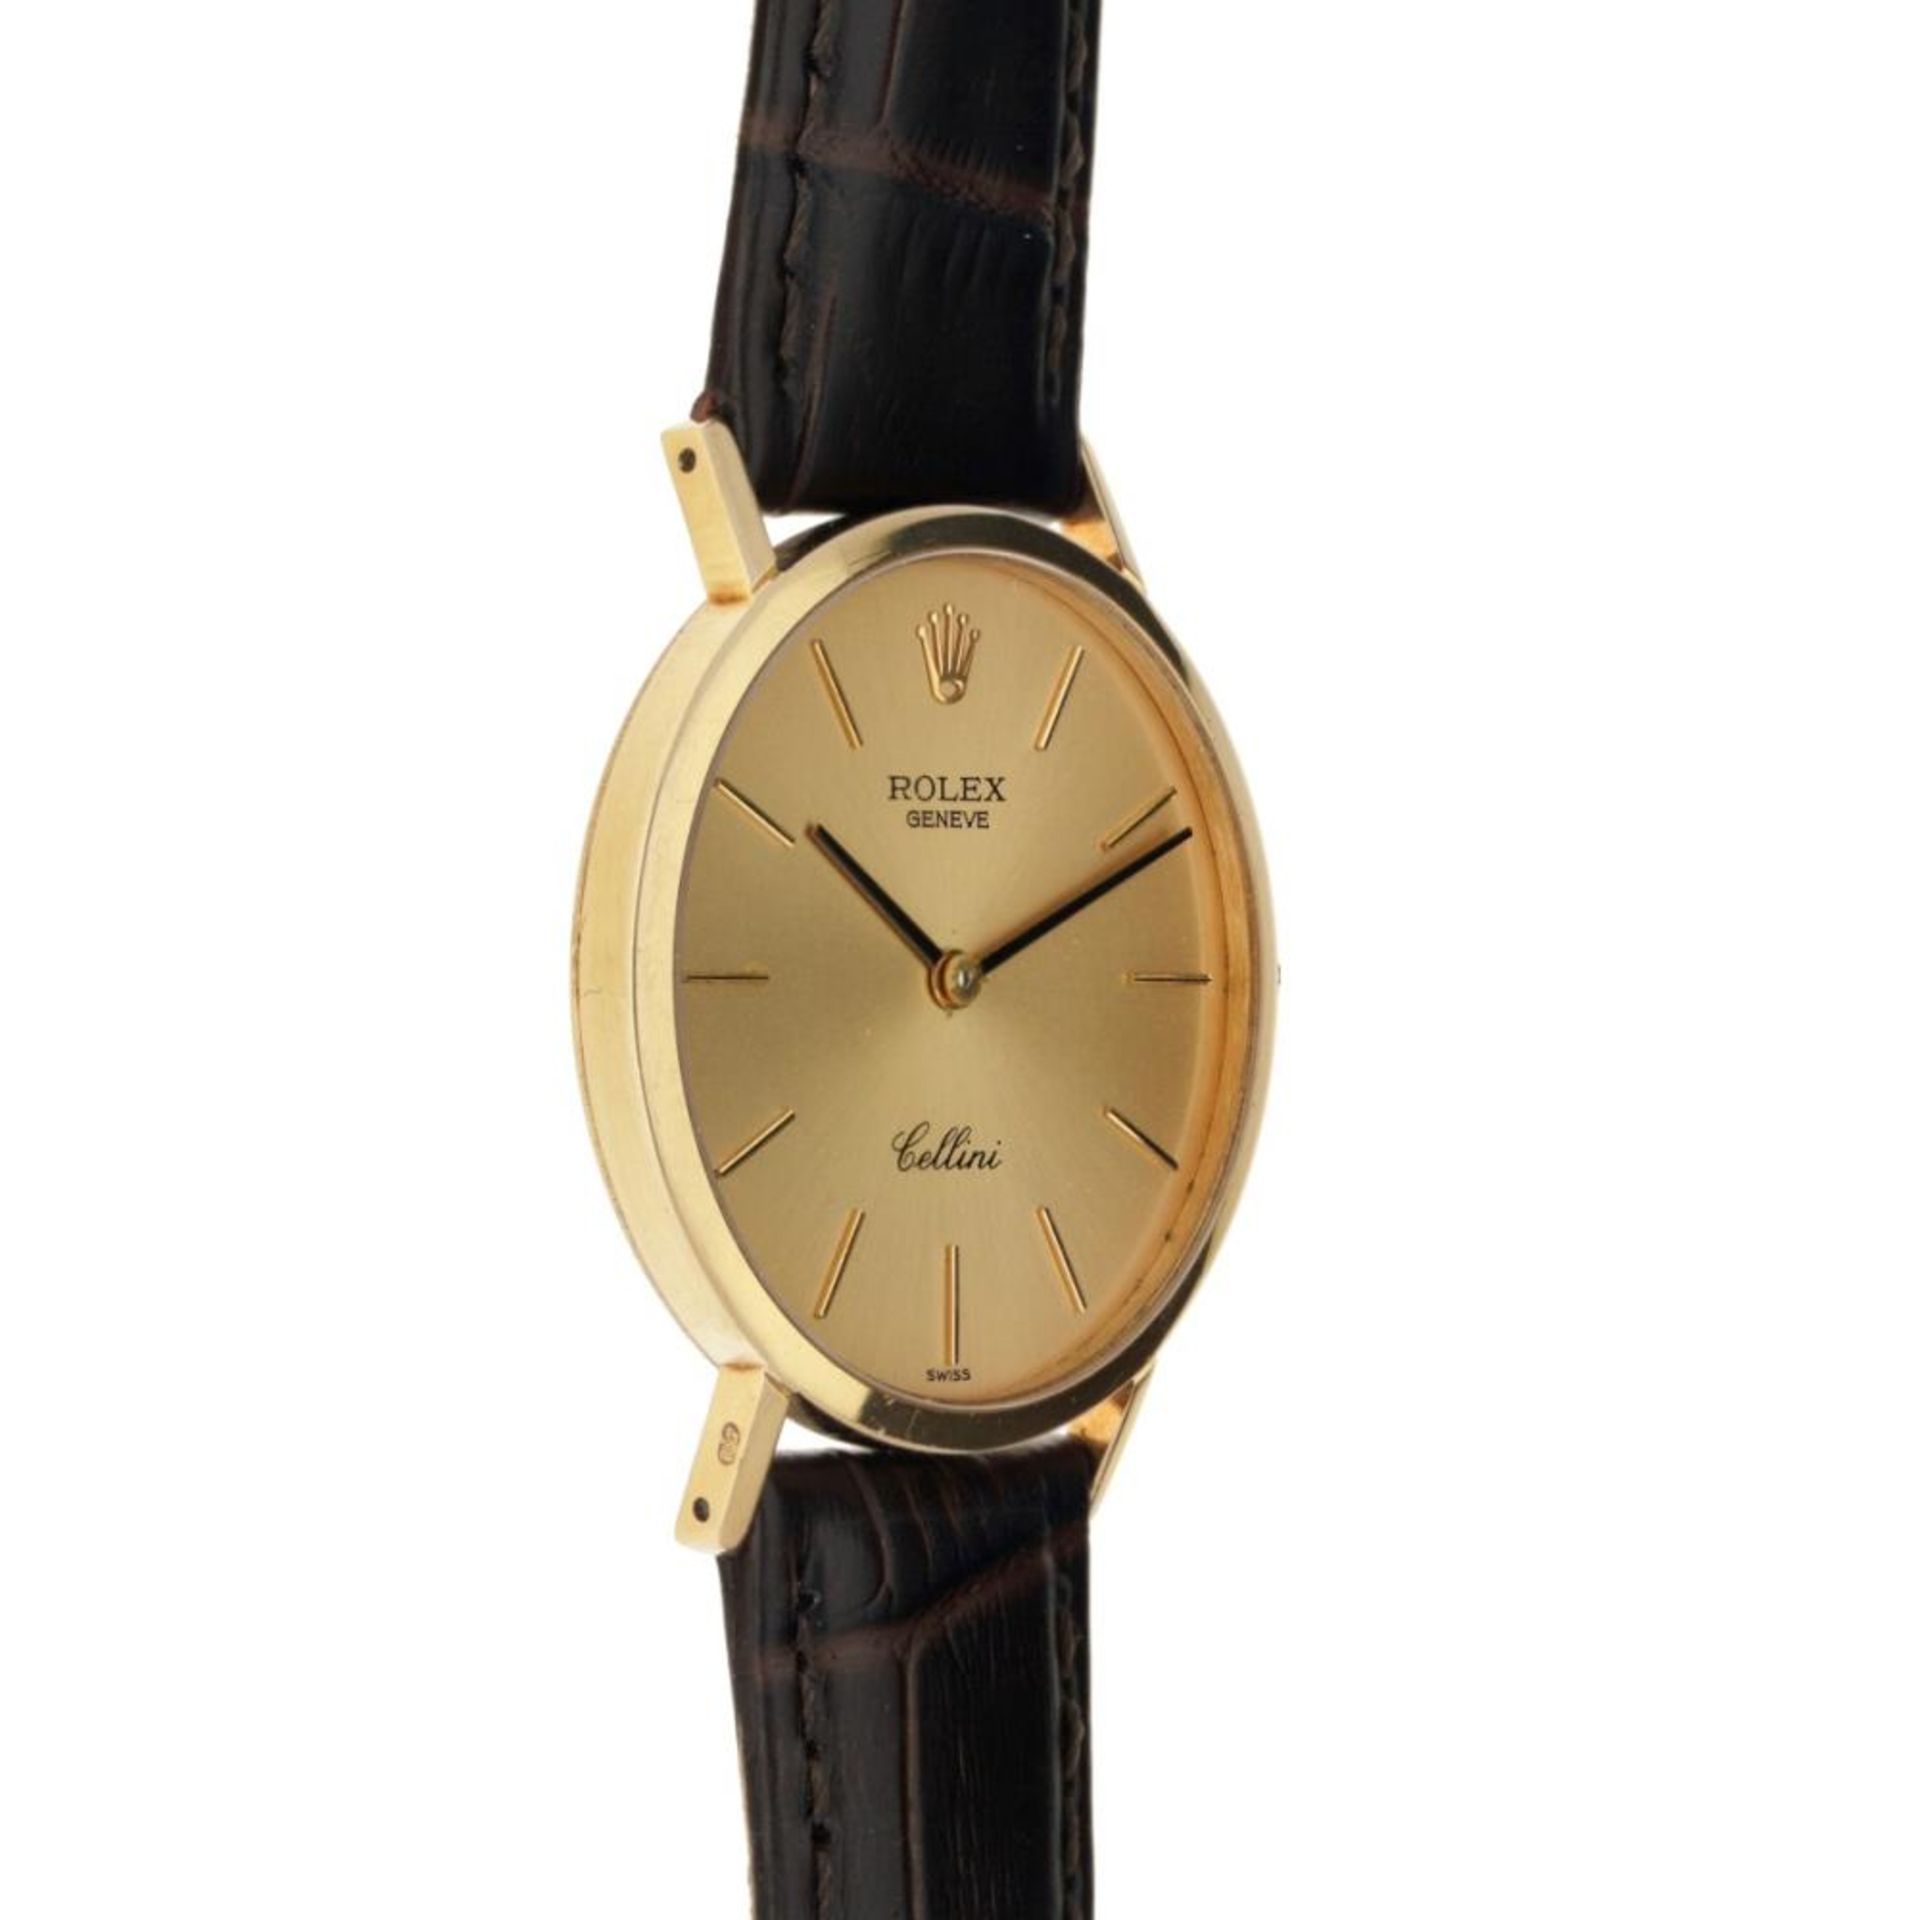 Rolex Cellini 4112 - Men's watch - approx. 1995. - Bild 4 aus 6